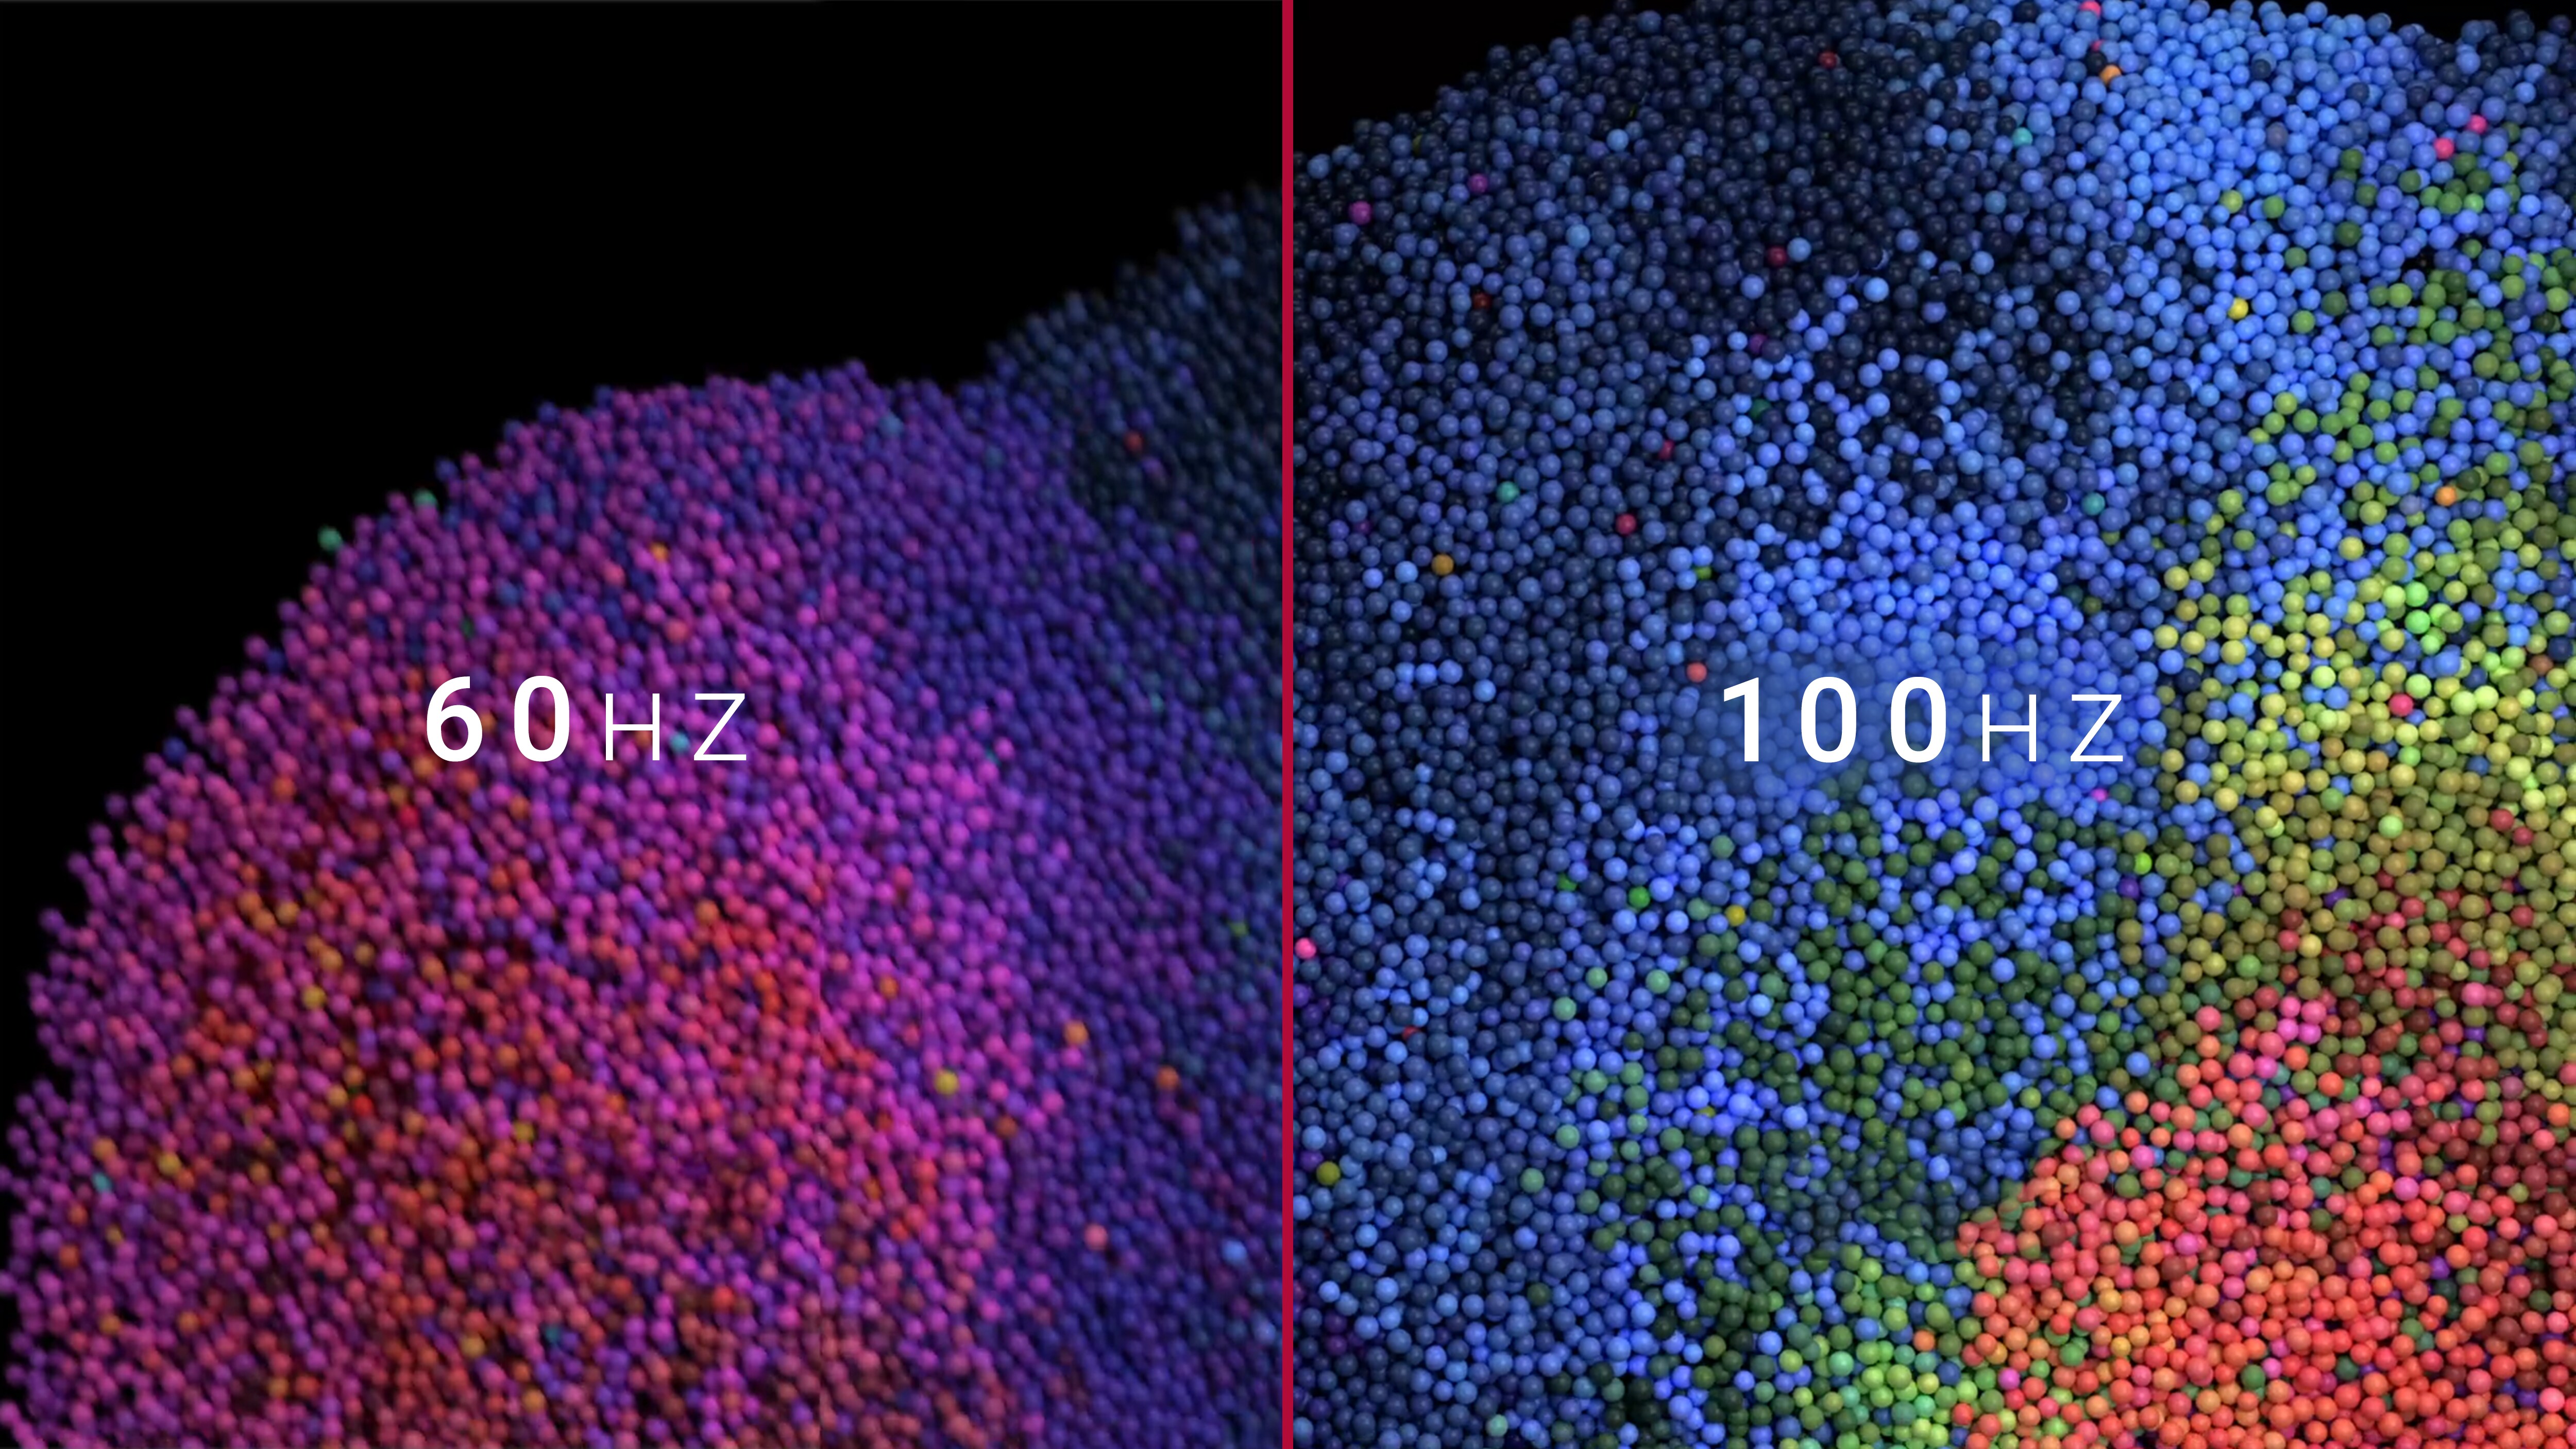 Sammenligning mellem 60 Hz-skærm og 100 Hz-skærm